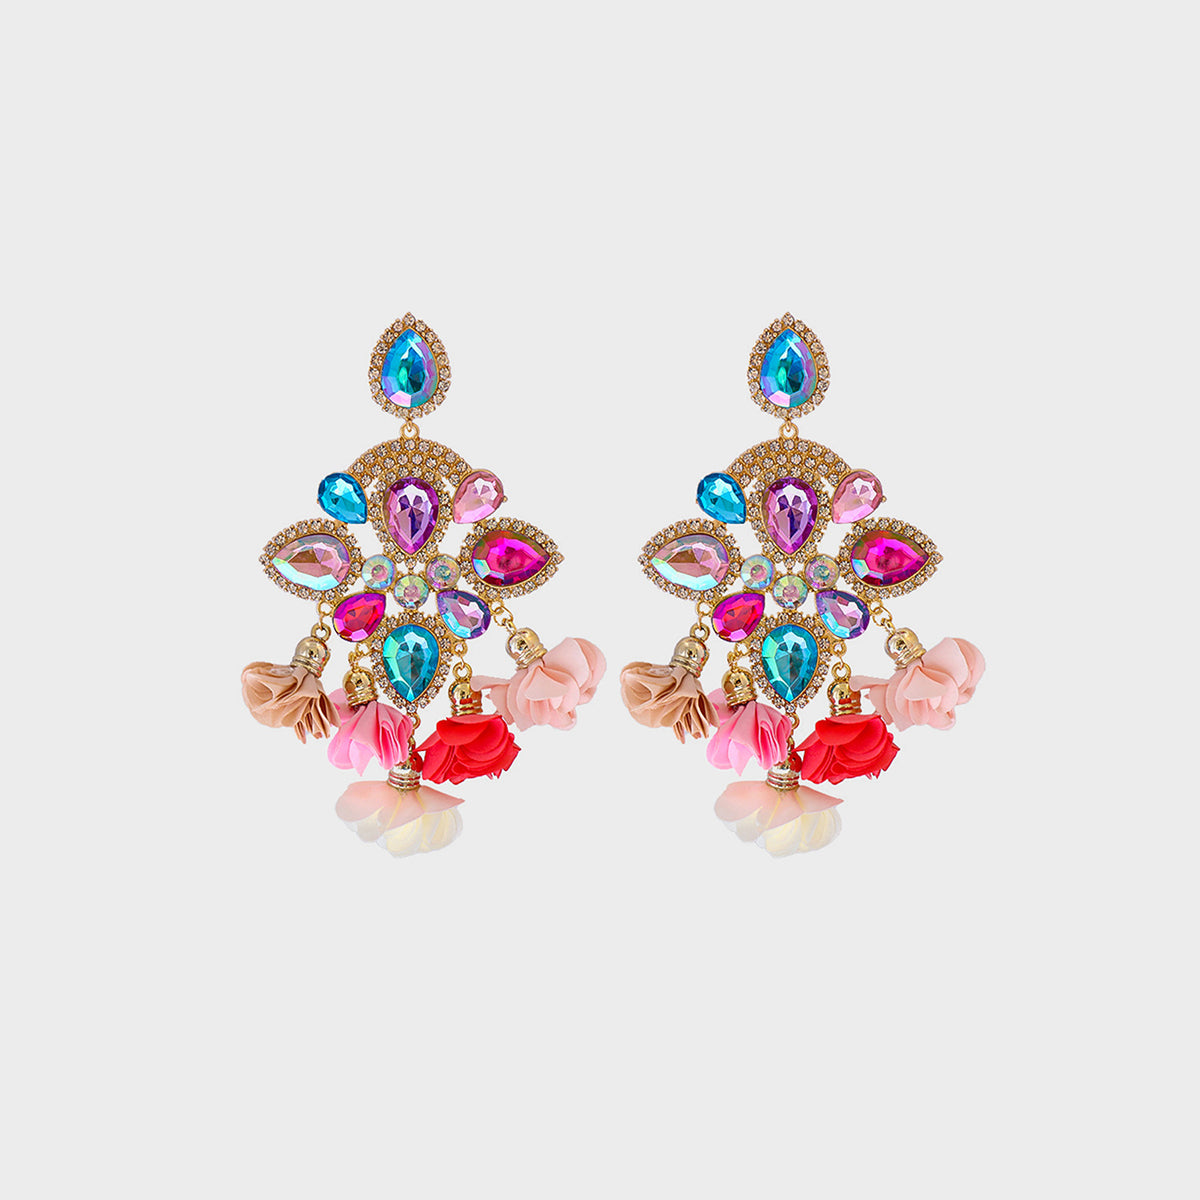 Flower Shape Rhinestone Alloy Dangle Earrings Hot Pink One Size